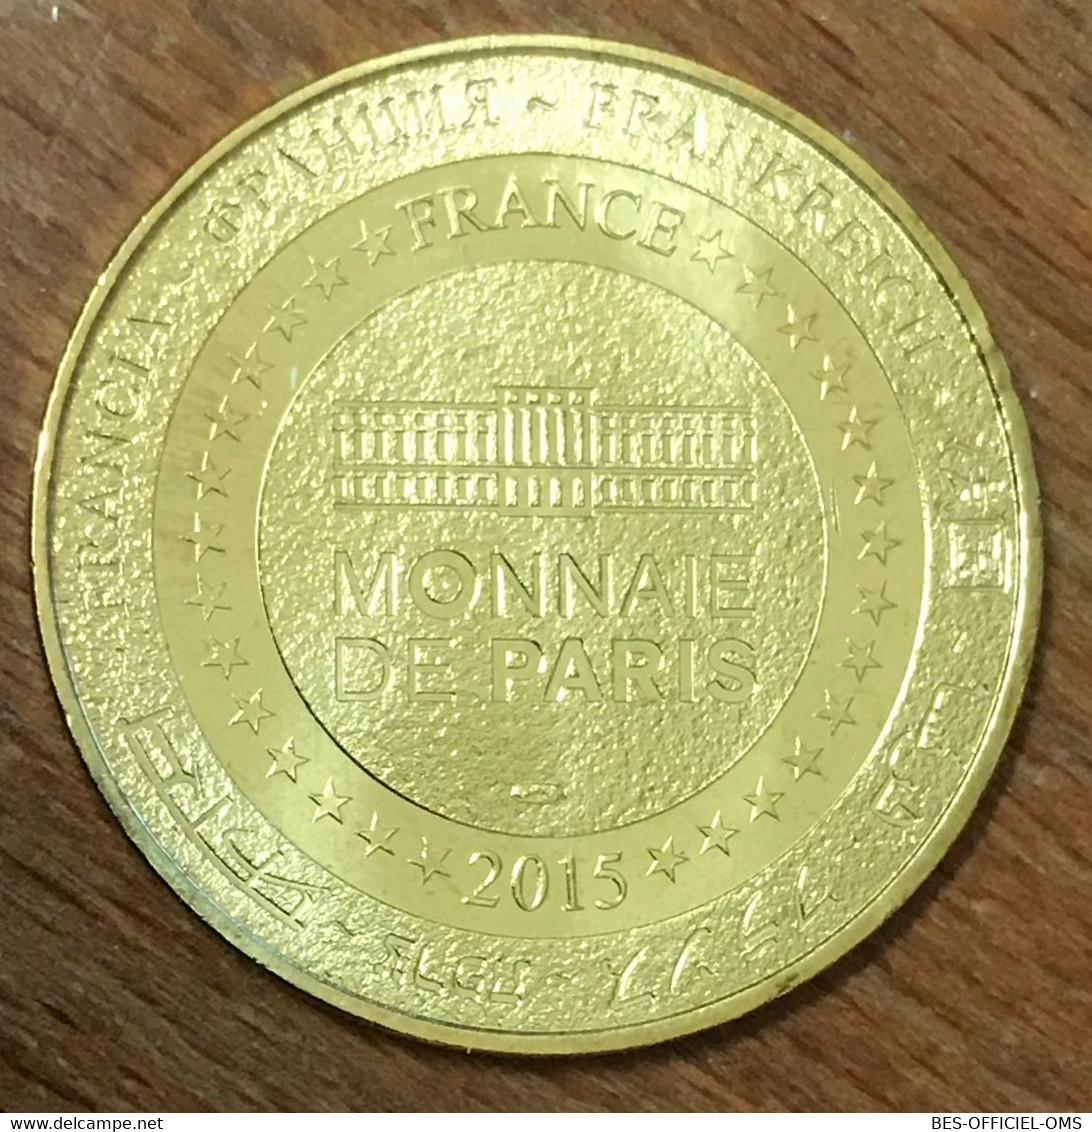 60 PLAILLY PARC ASTERIX FALBALA MDP 2015 MÉDAILLE SOUVENIR MONNAIE DE PARIS JETON TOURISTIQUE MEDALS COINS TOKENS - 2015